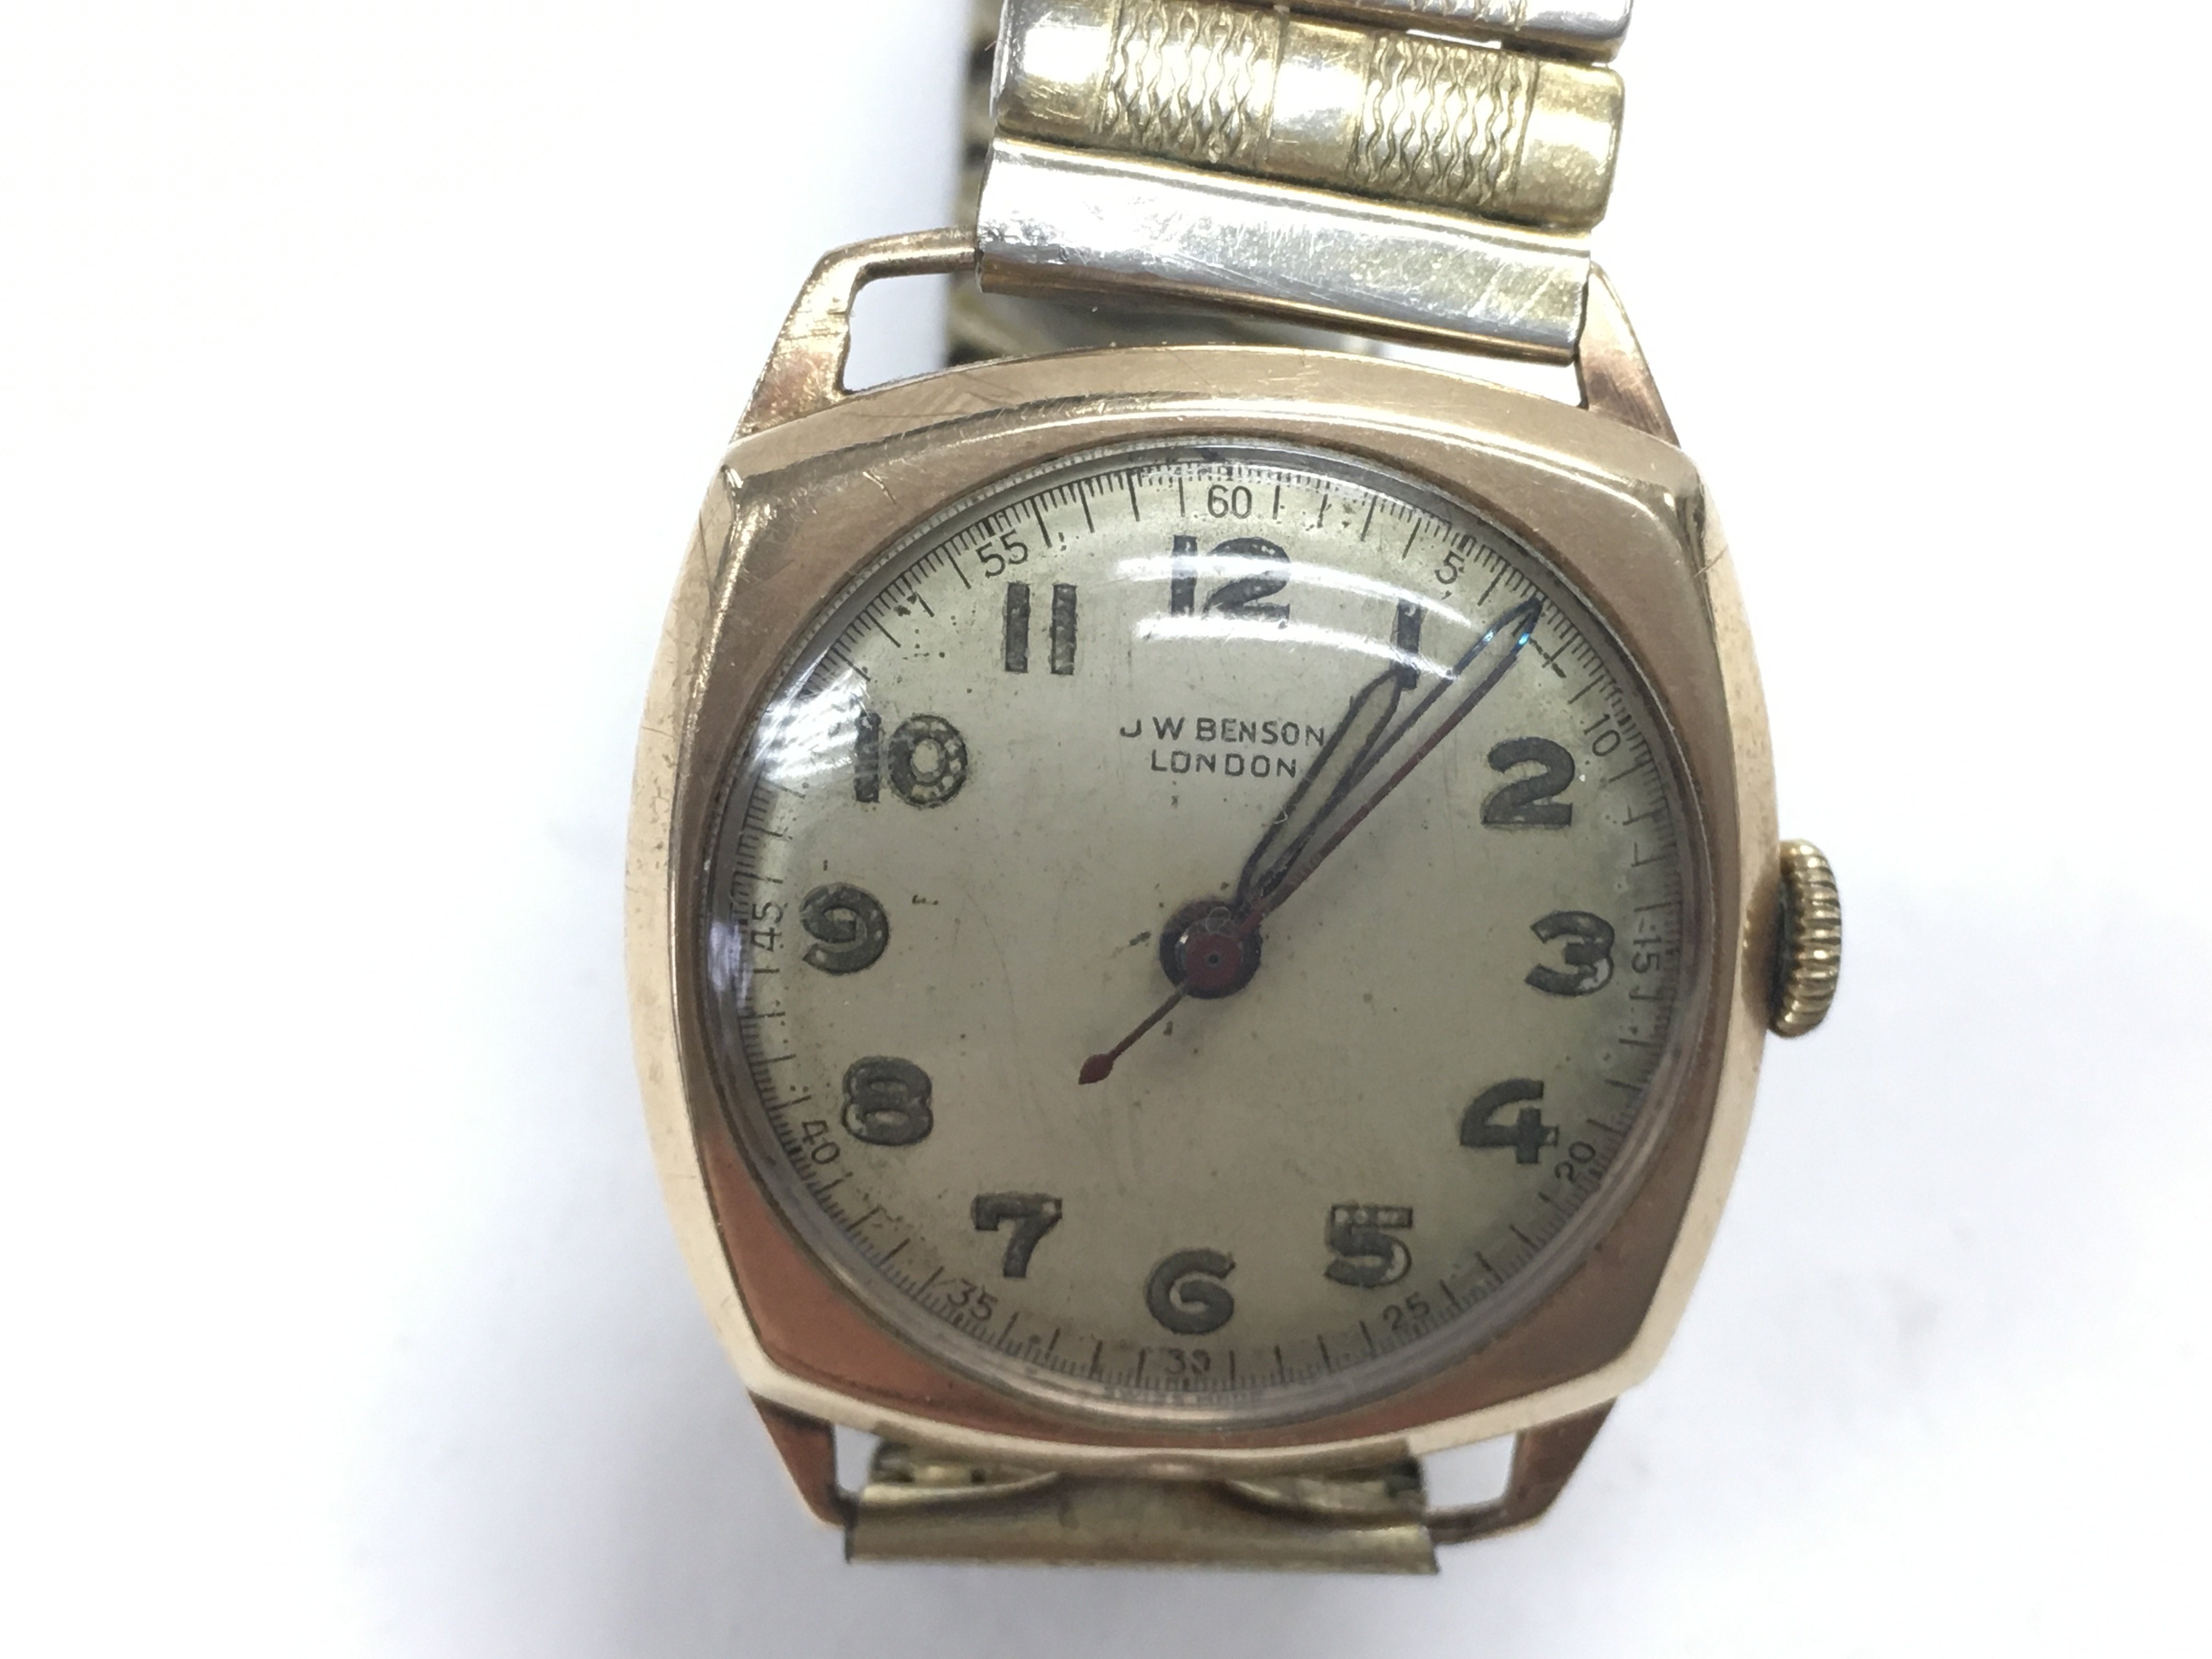 A J W Benson gold watch. Seen running but not test - Image 2 of 6